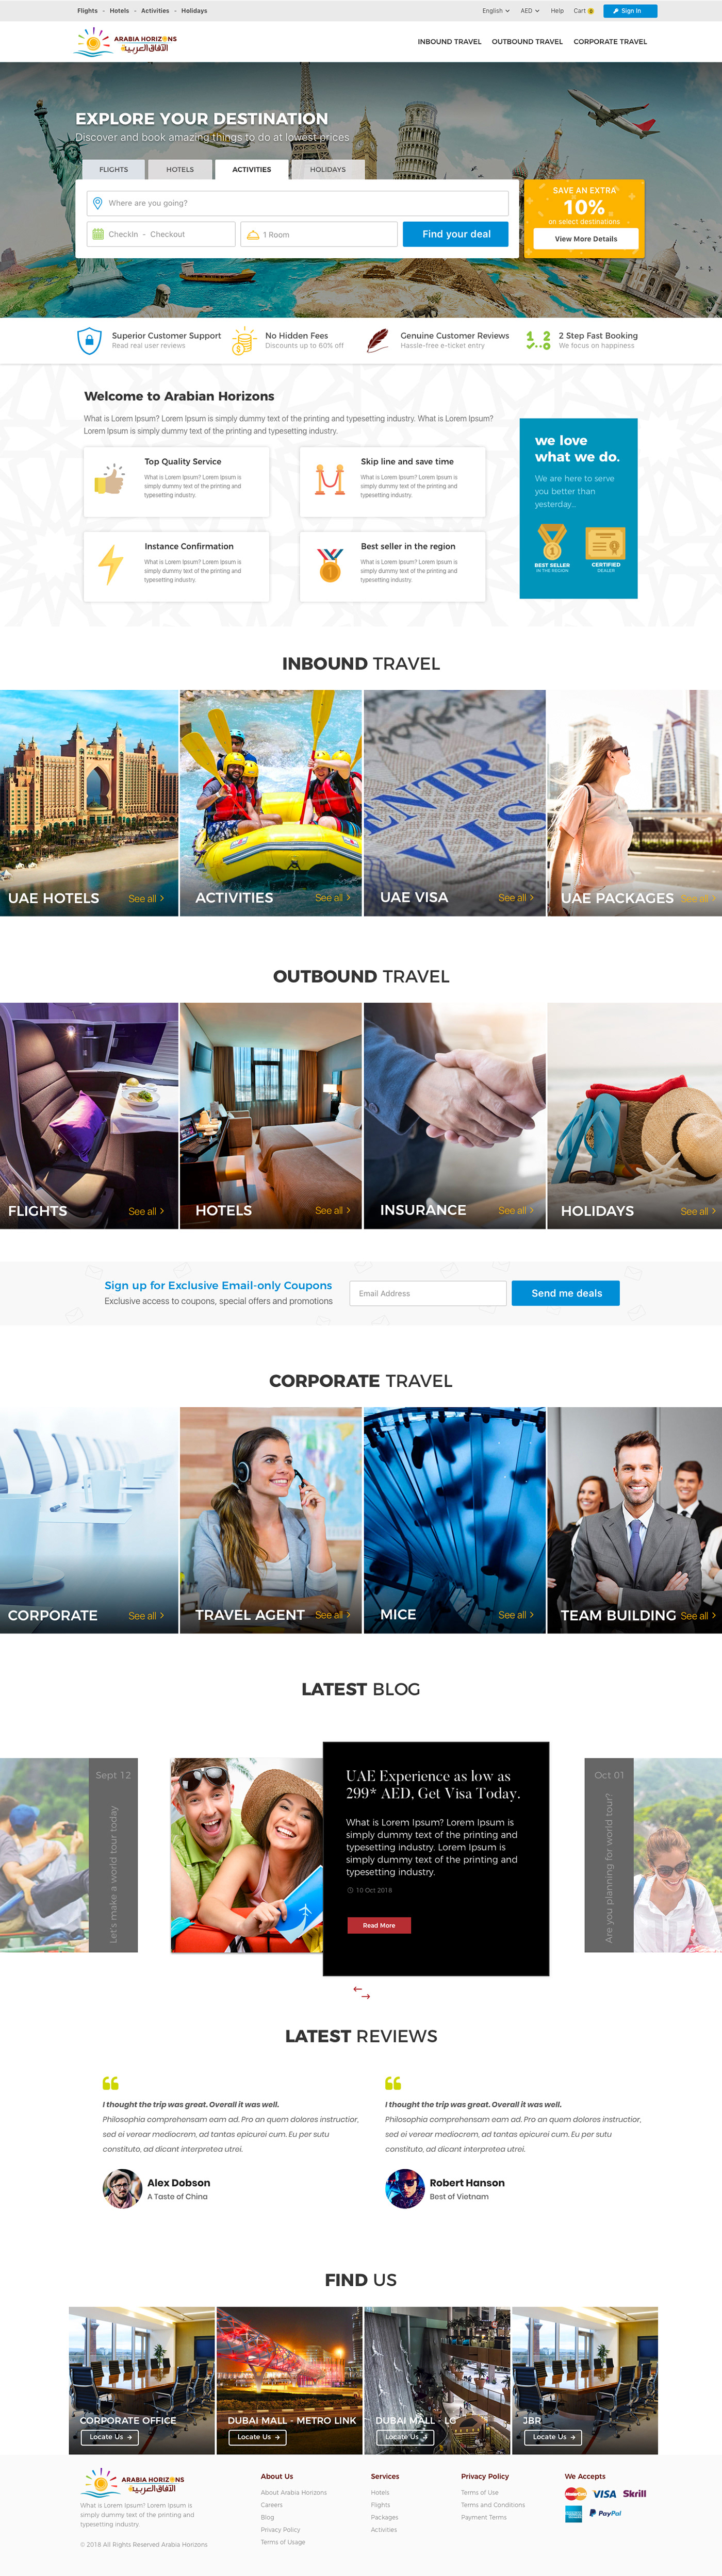 Travel tourism UAE dubai Website Design concept design Travel Website tourism website Travelling